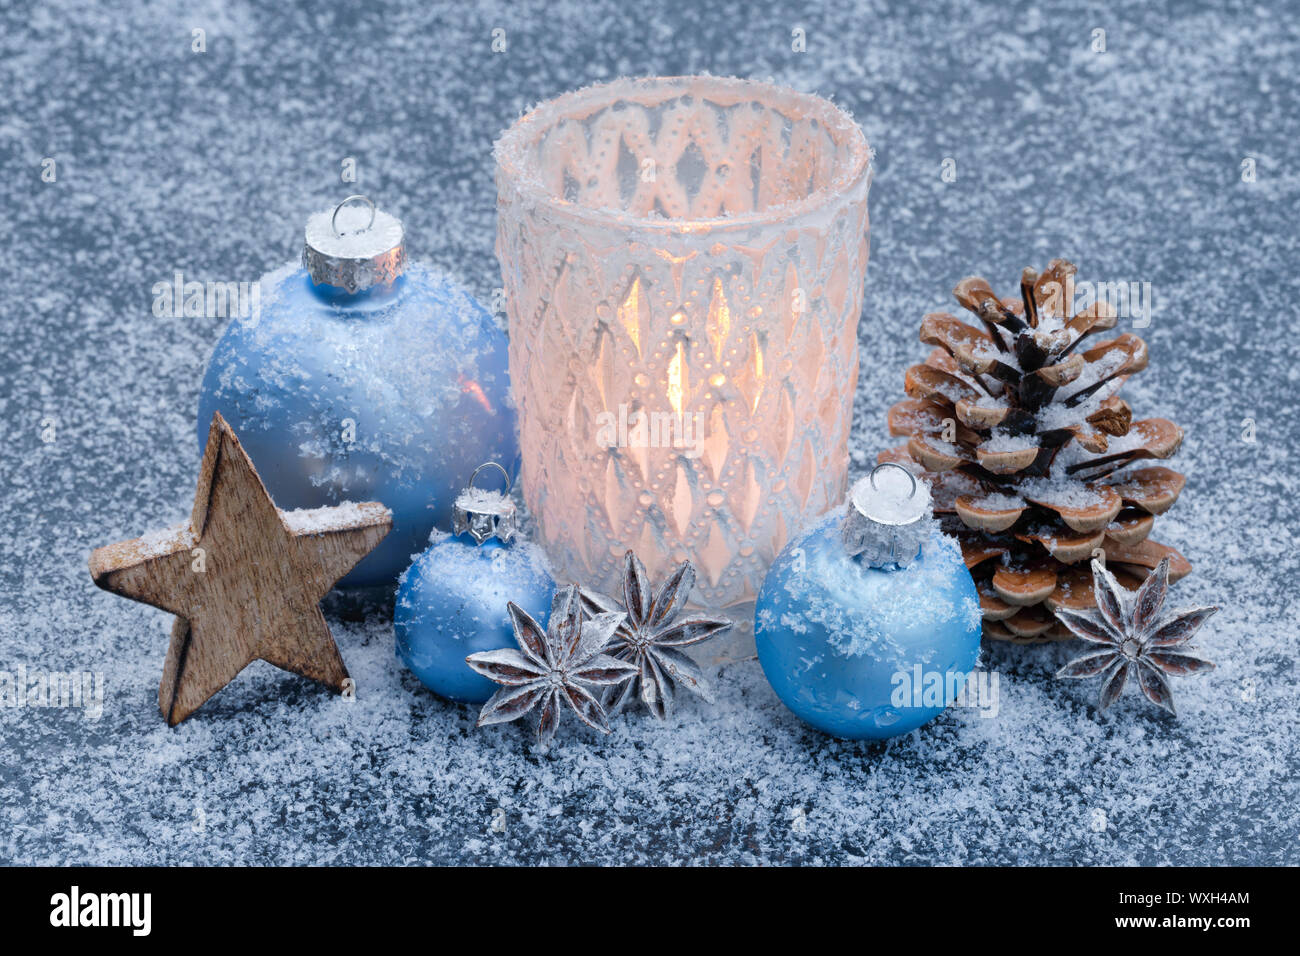 Natürliche advent dekoration: eine brennende Kerze in einem stom Lampe im  Schnee, durch Licht blaue Kugeln umgeben. Schweiz Stockfotografie - Alamy